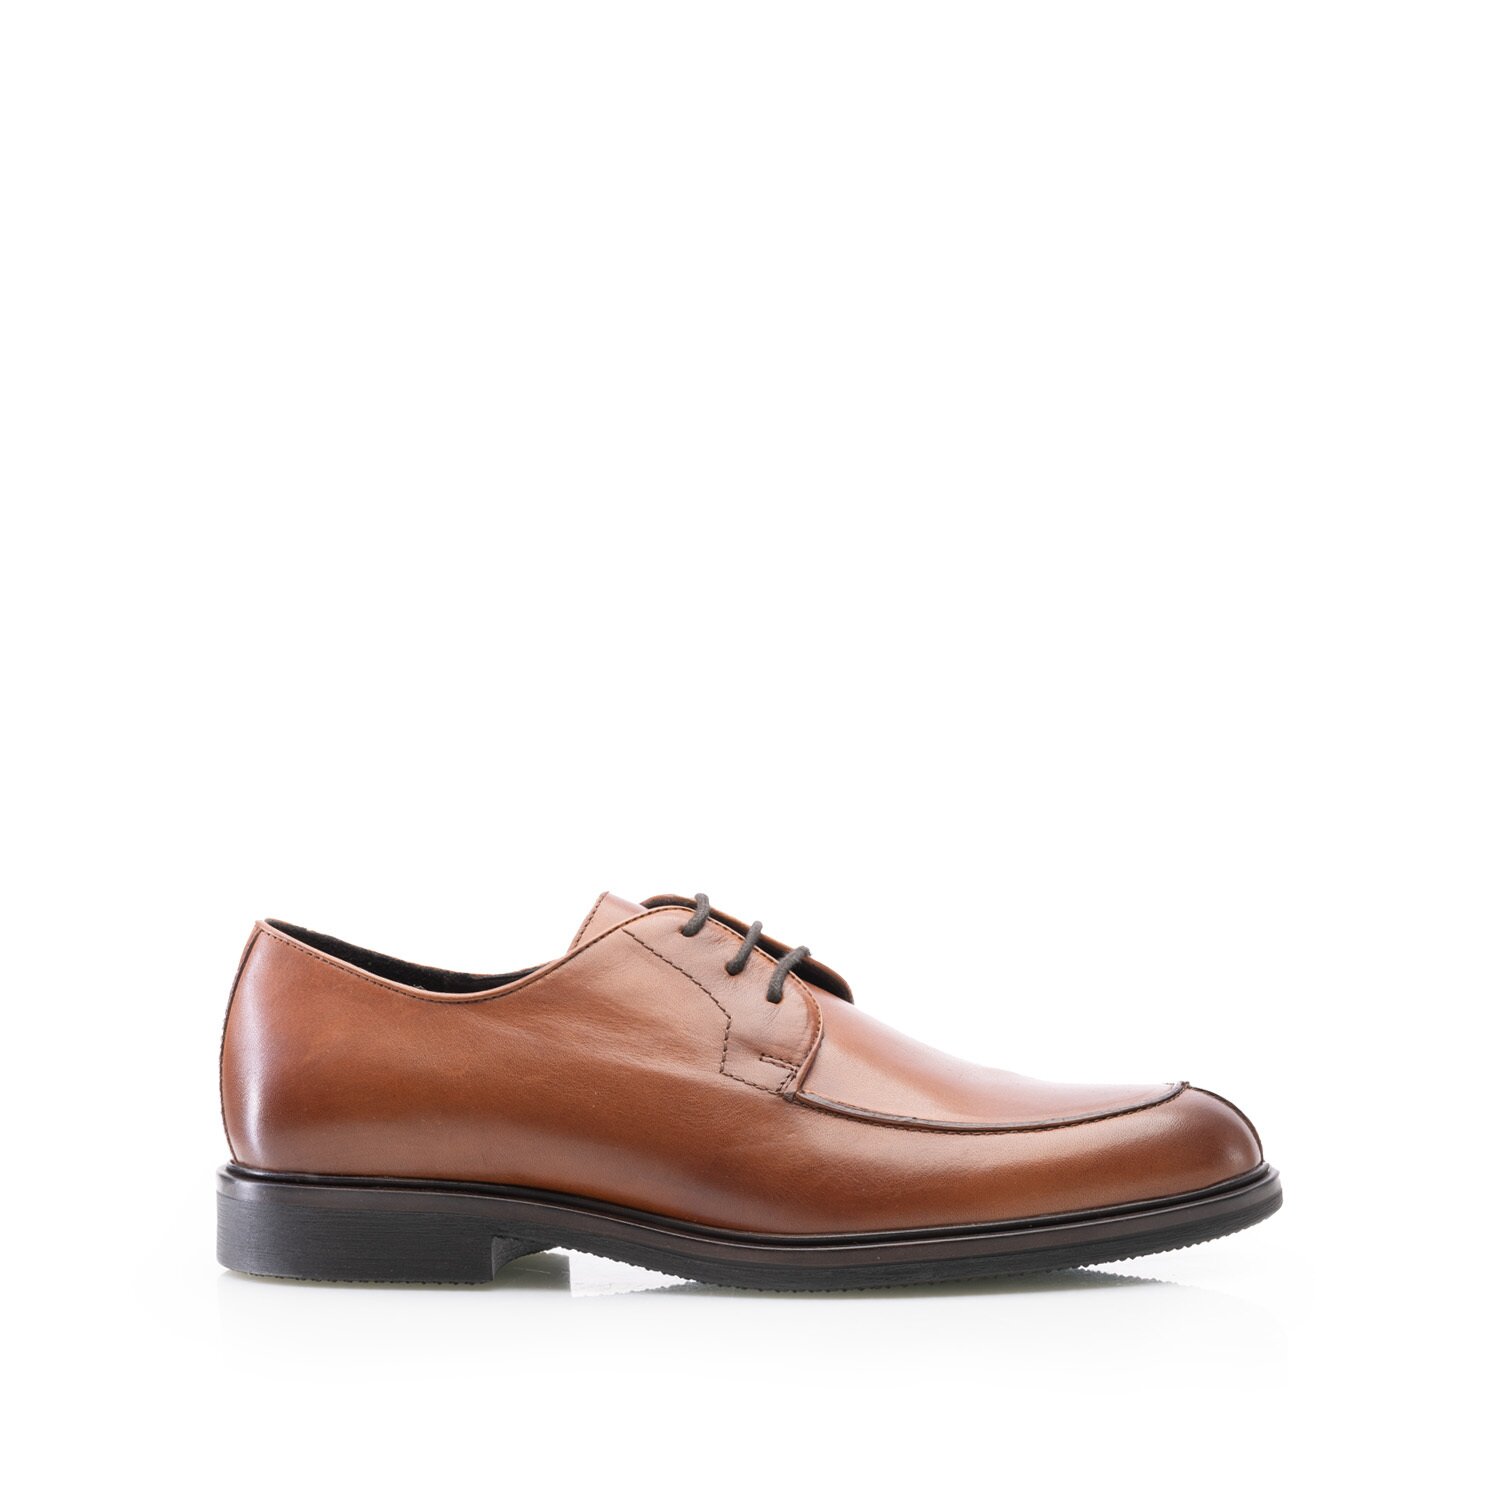 Pantofi casual bărbaț din piele naturală, Leofex - 656 Cognac Box